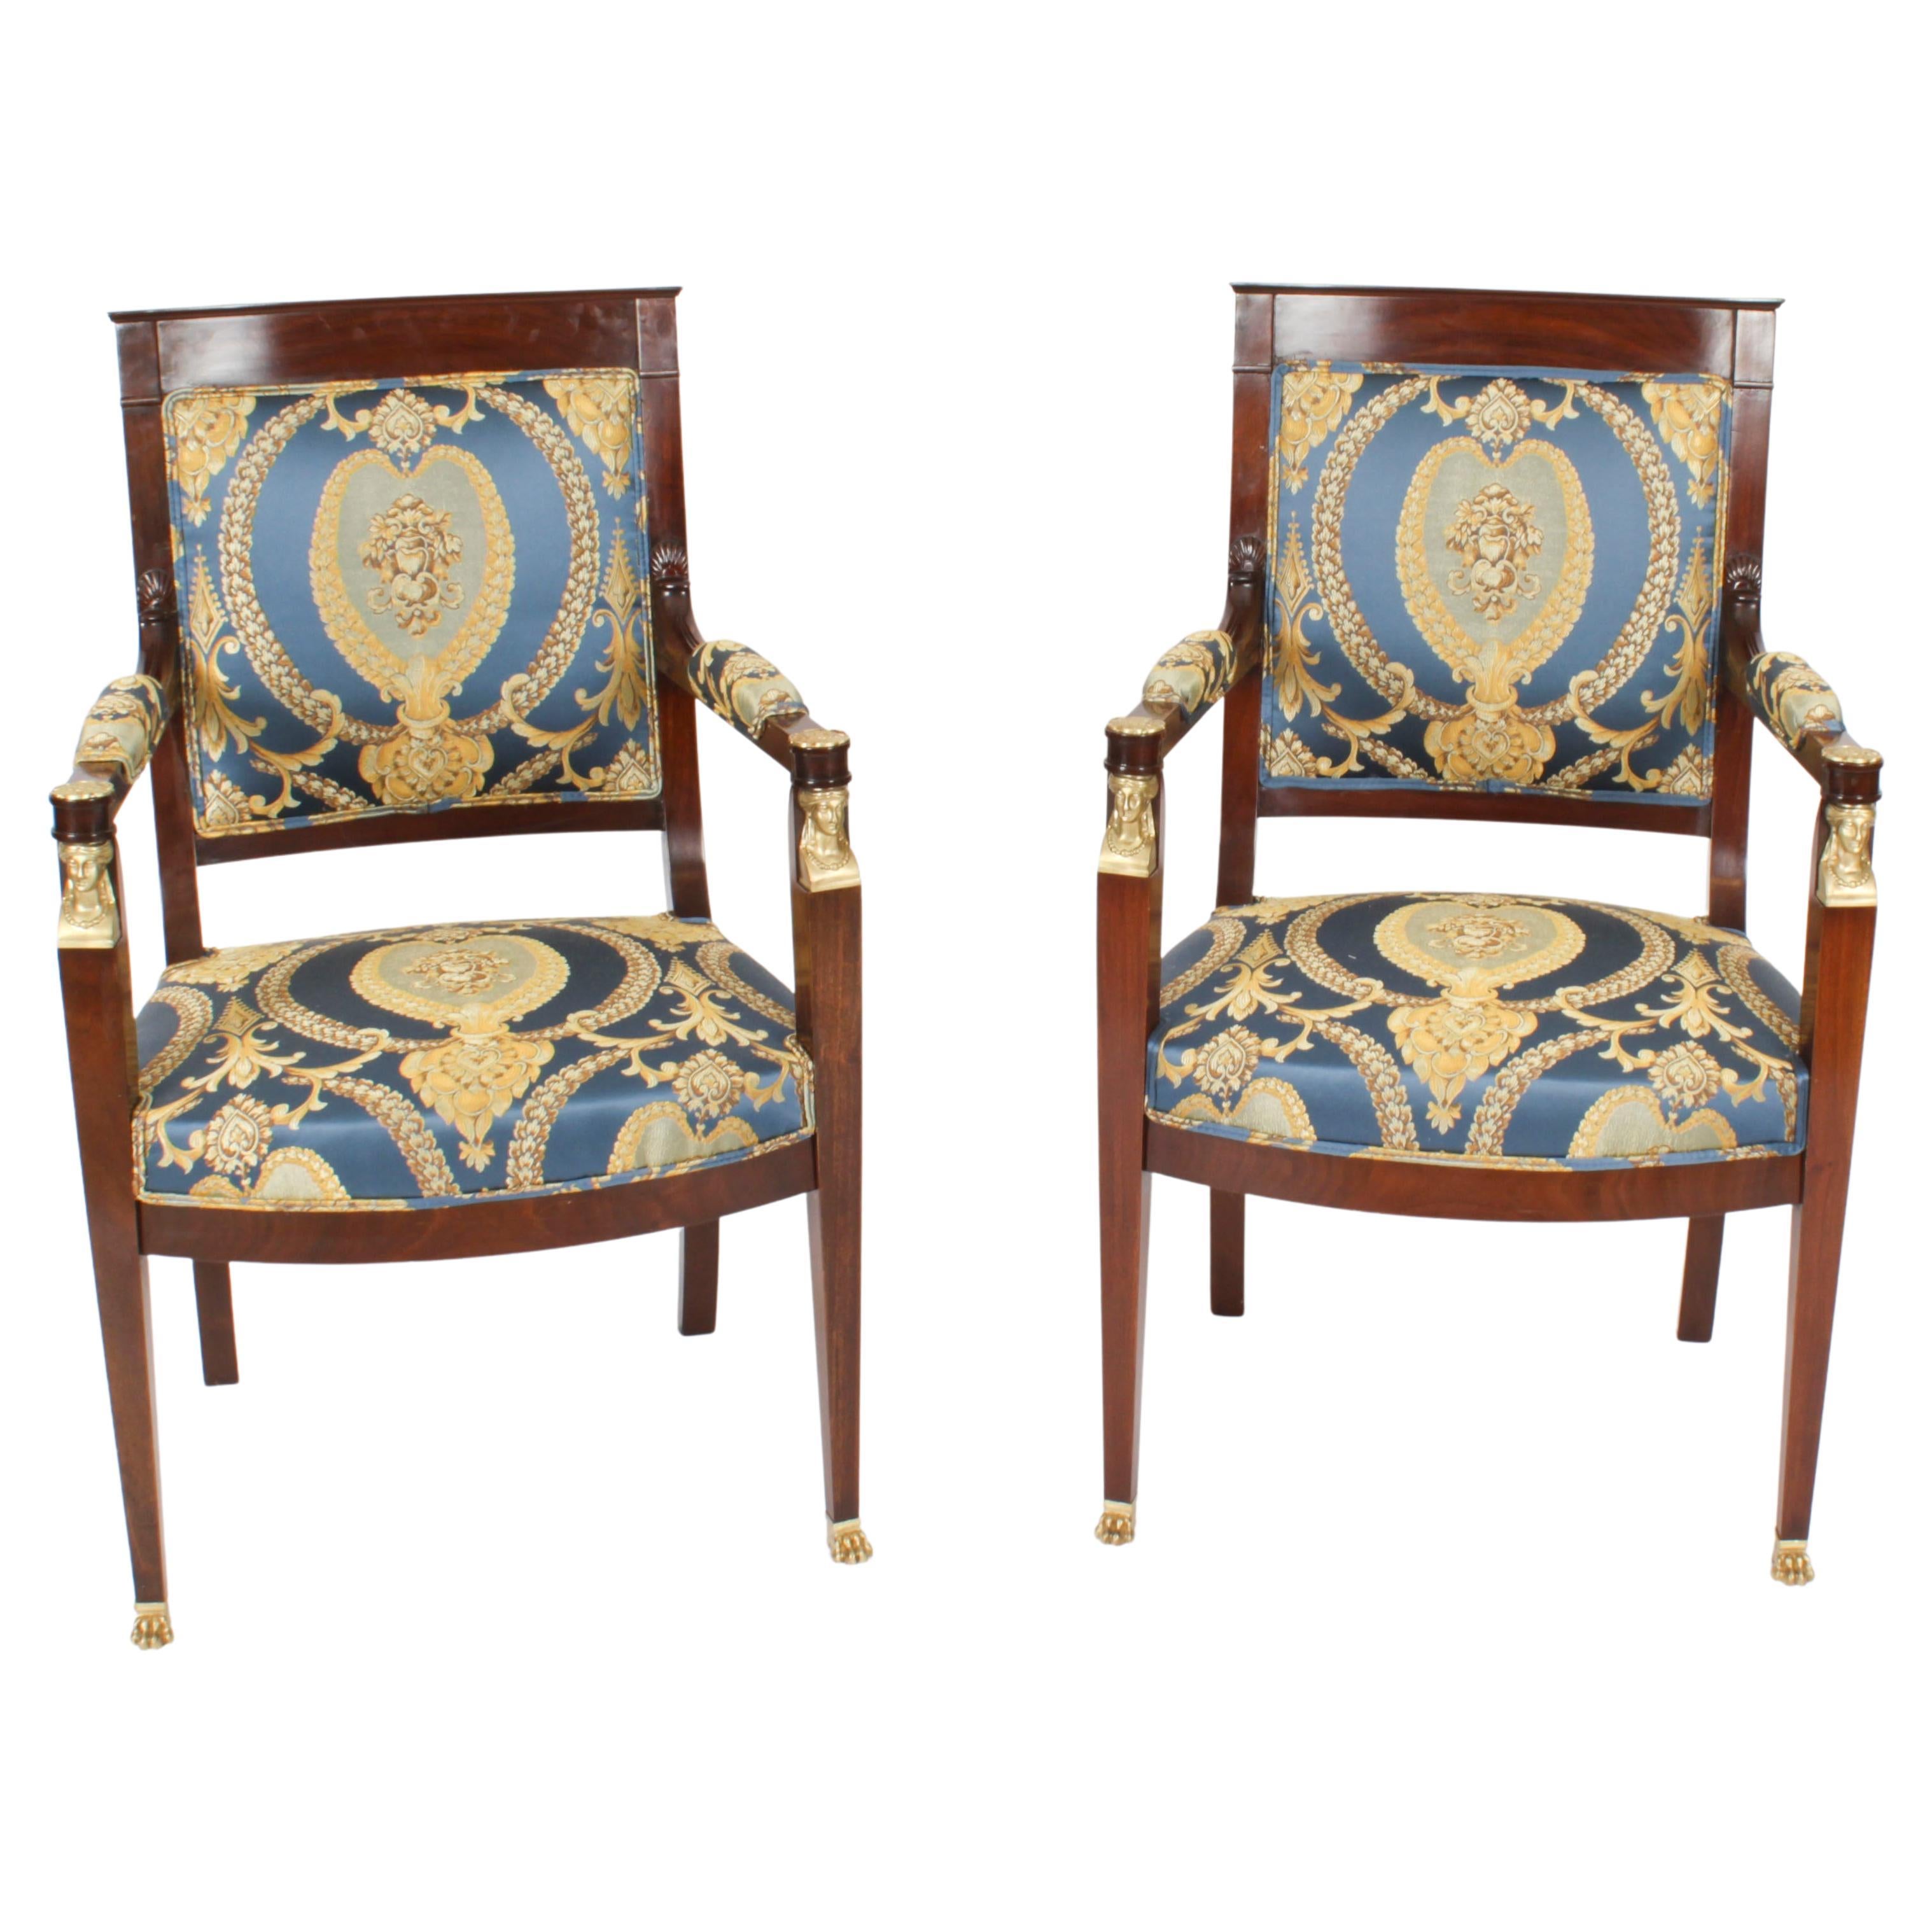 Ancienne paire de fauteuils de style néo-empire français montés en bronze doré des années 1870 - 19ème siècle